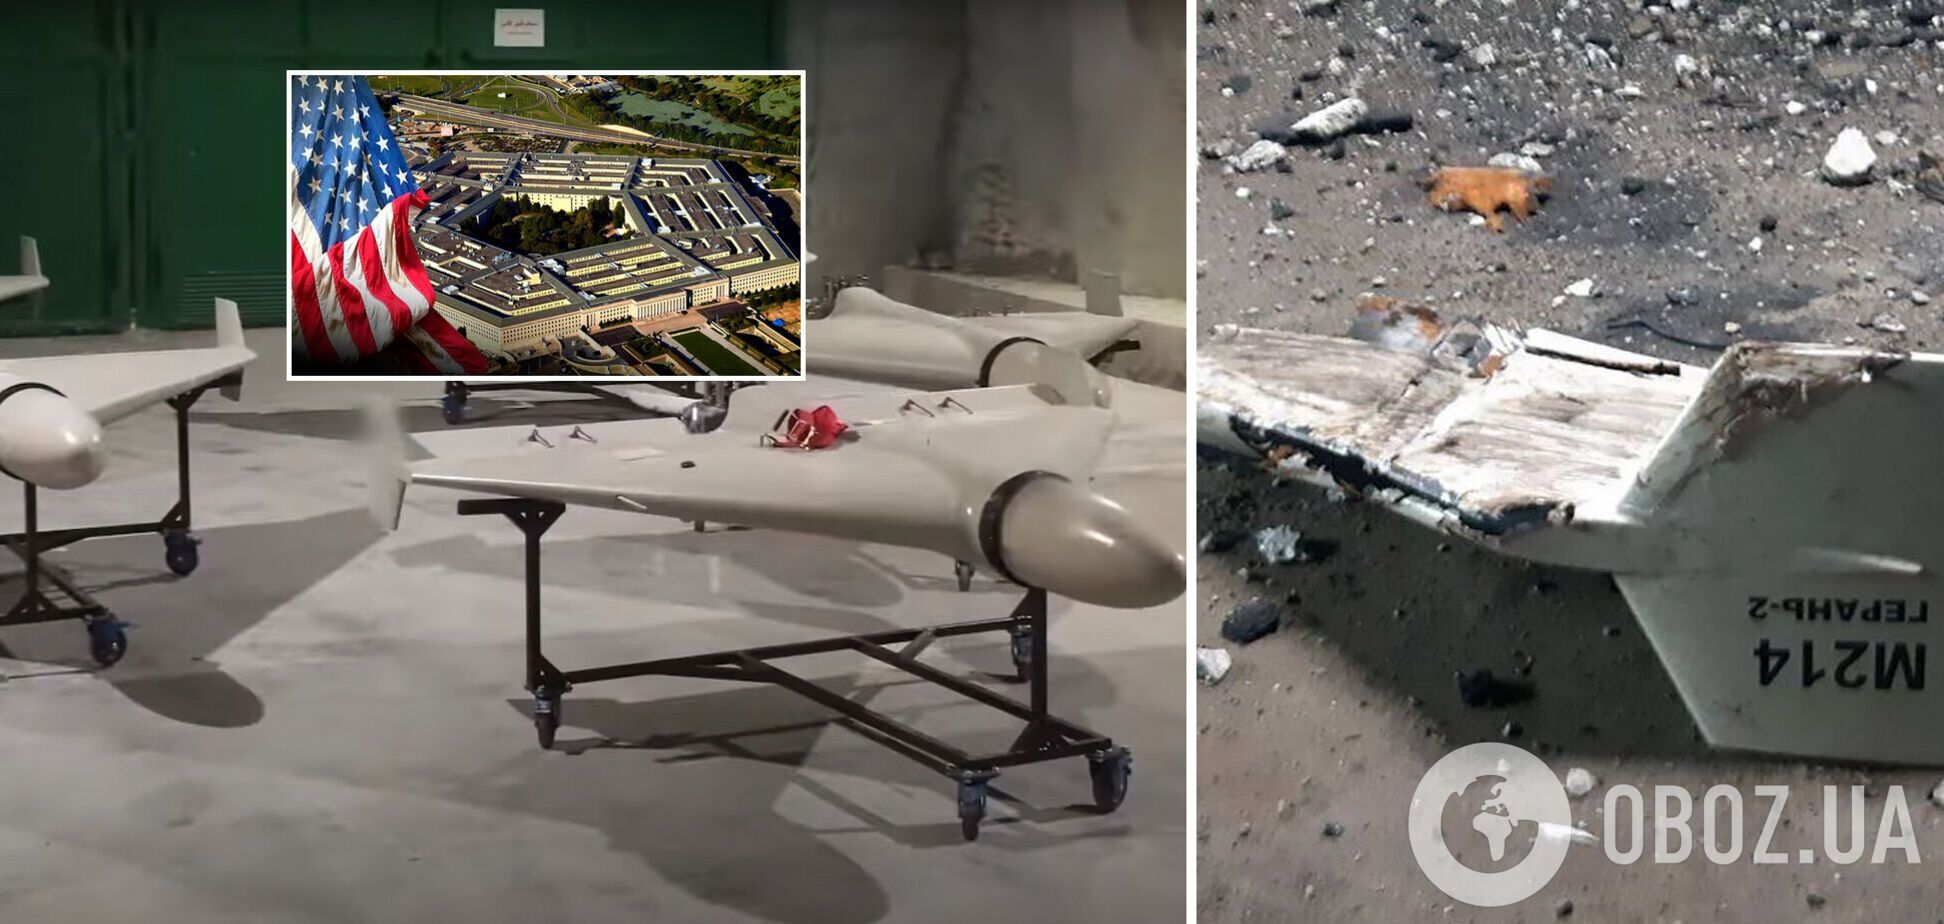 Иранские дроны, которые Россия использует в Украине, потерпели многочисленные неудачи на фронте – Пентагон